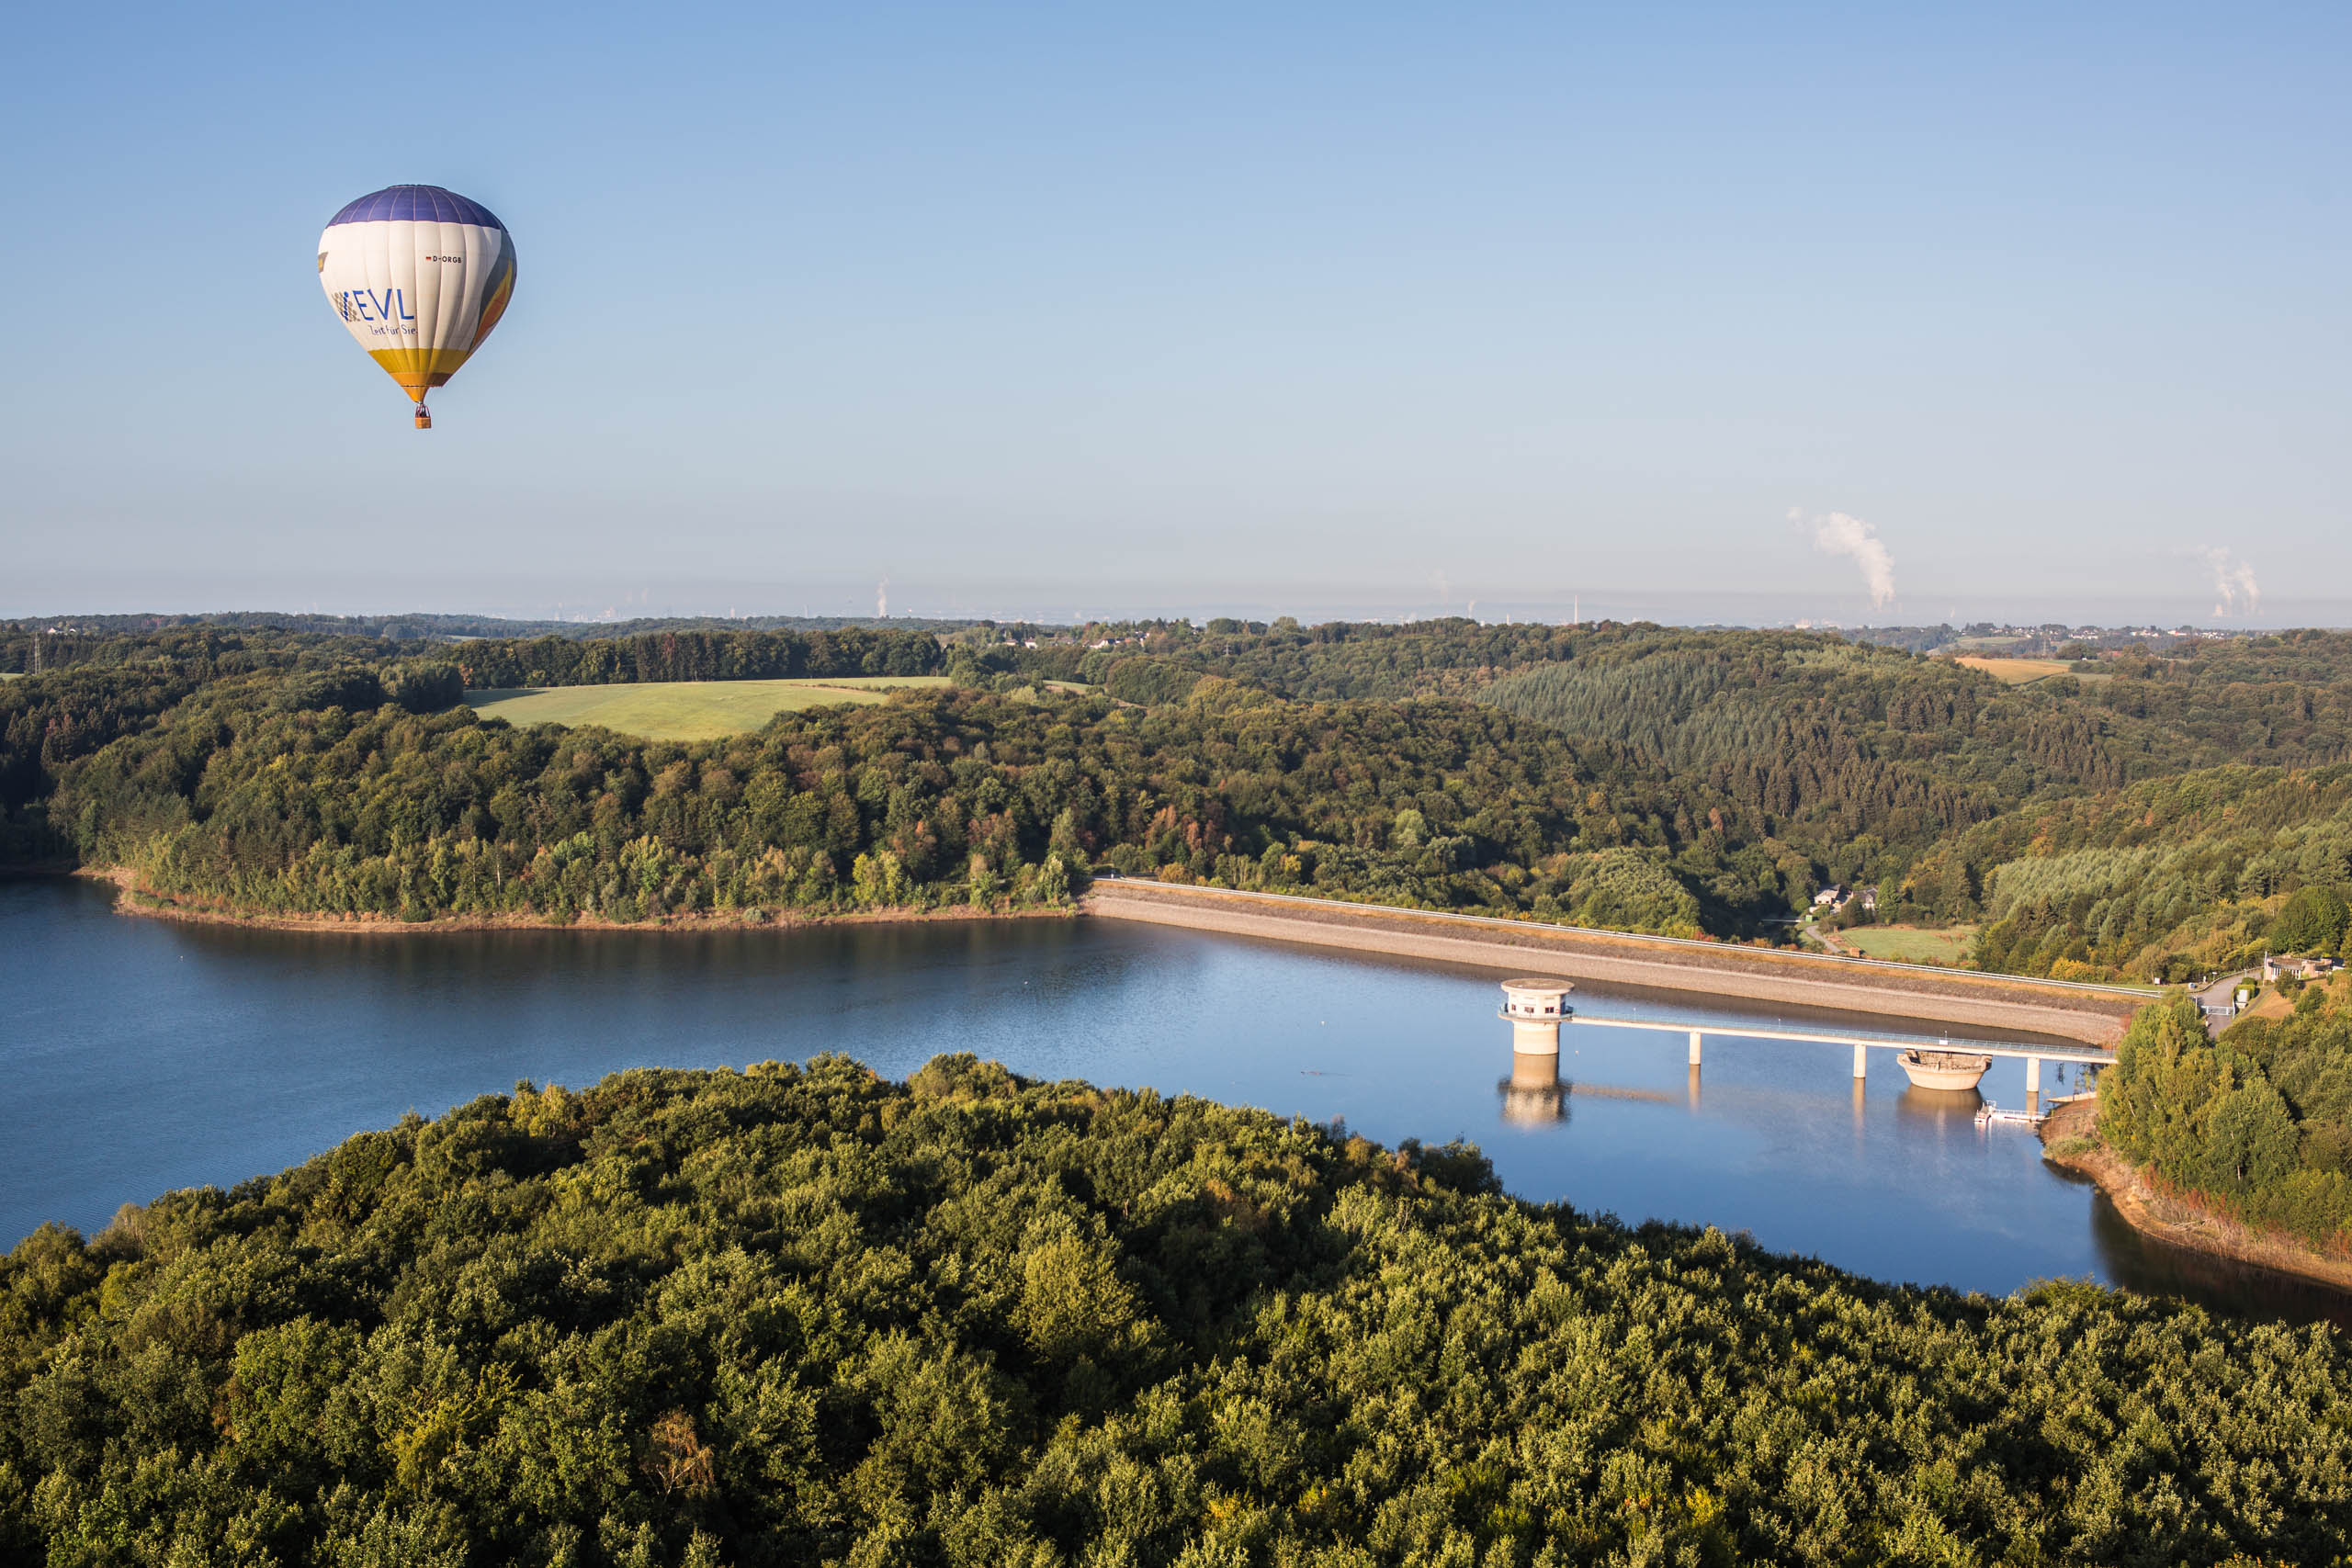 Ballonfahrt über dem Rheinisch-Bergischen Kreis sowie der Dhünntalsperre